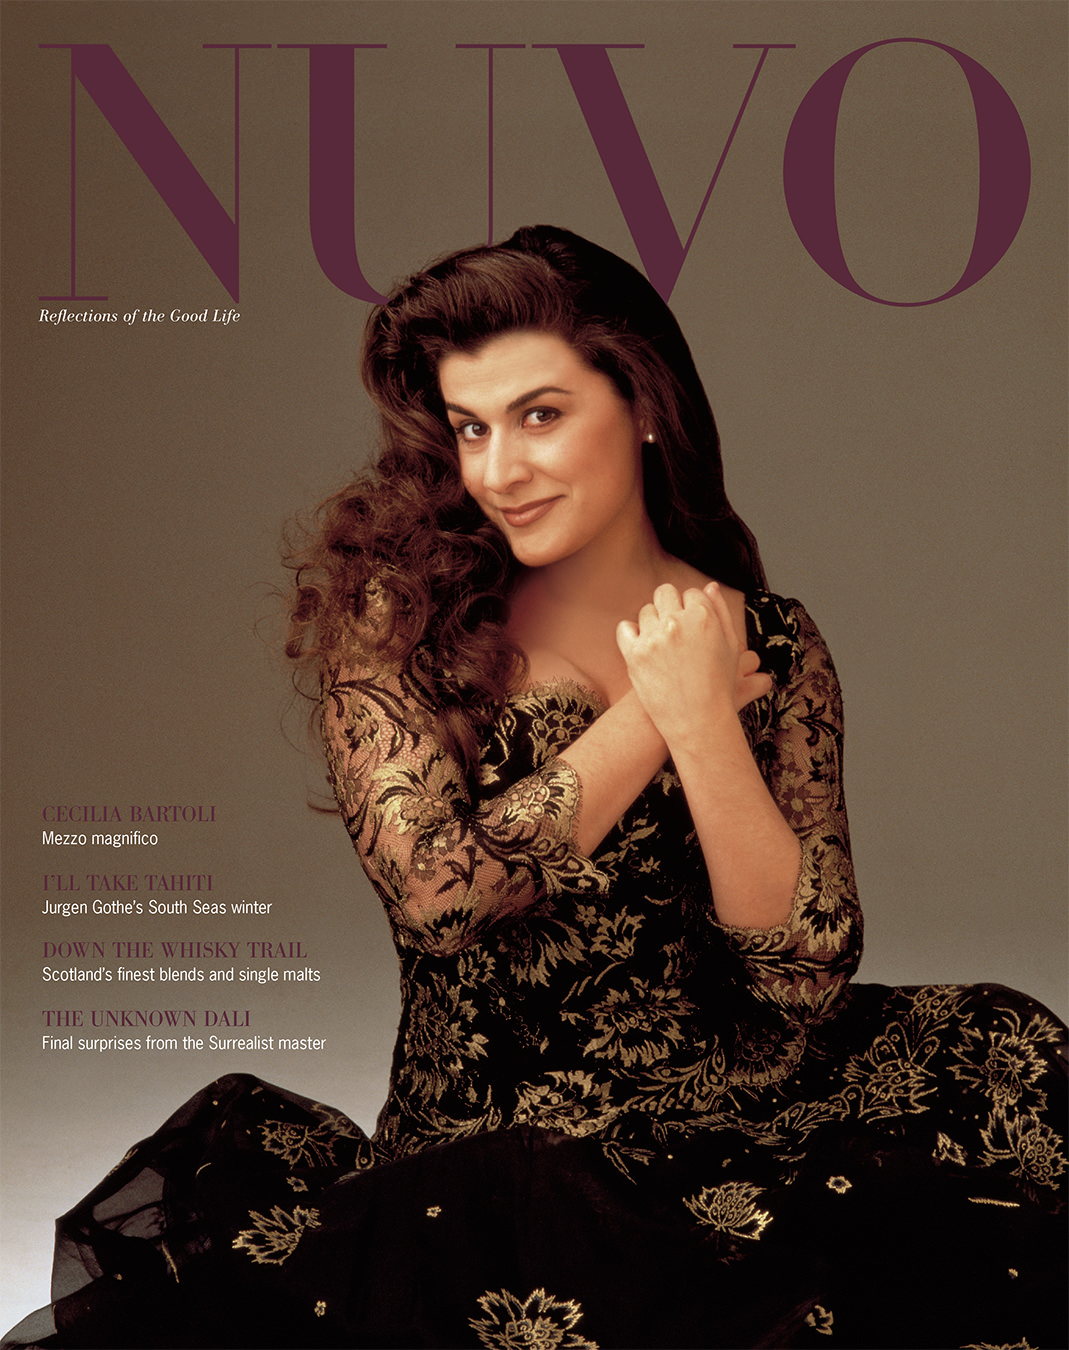 NUVO Magazine Winter 2000 Cover featuring Cecilia Bartoli